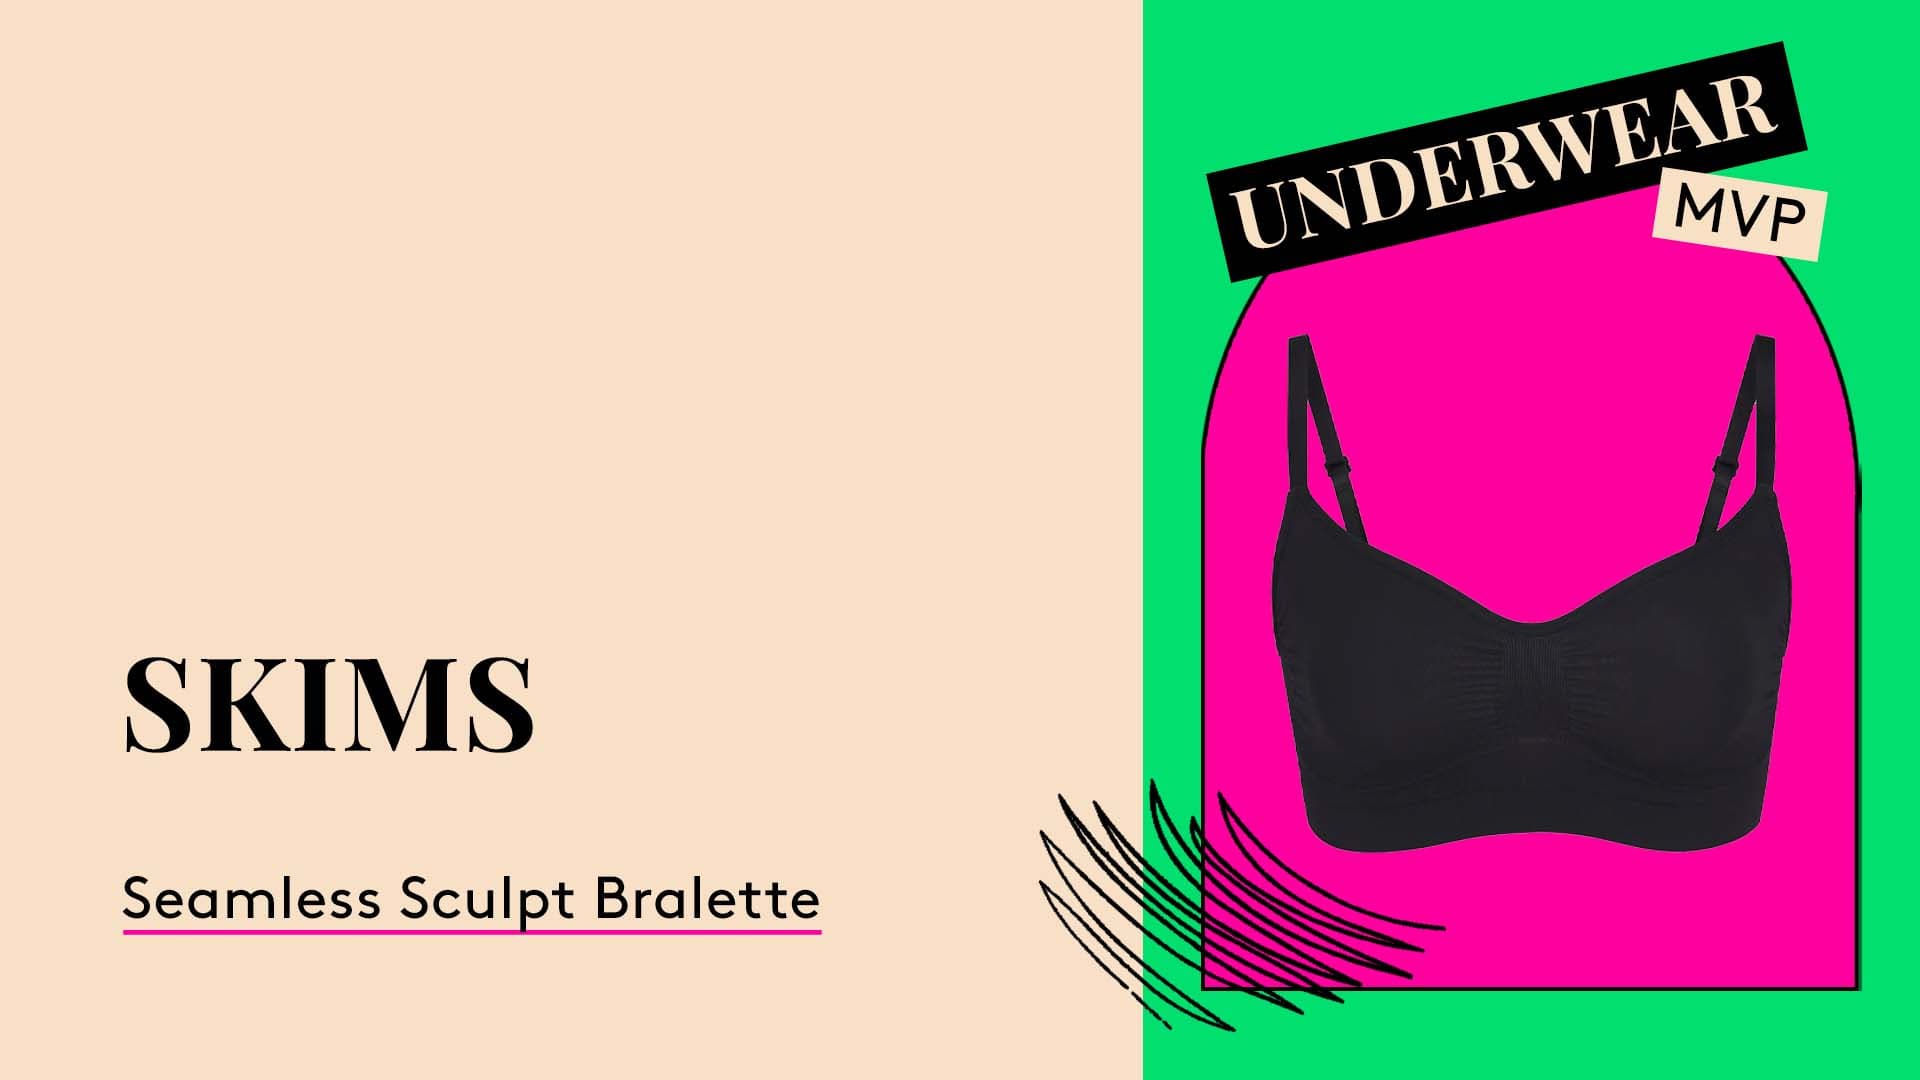 Underwear MVP. Skims Seamless Sculpt Bralette.